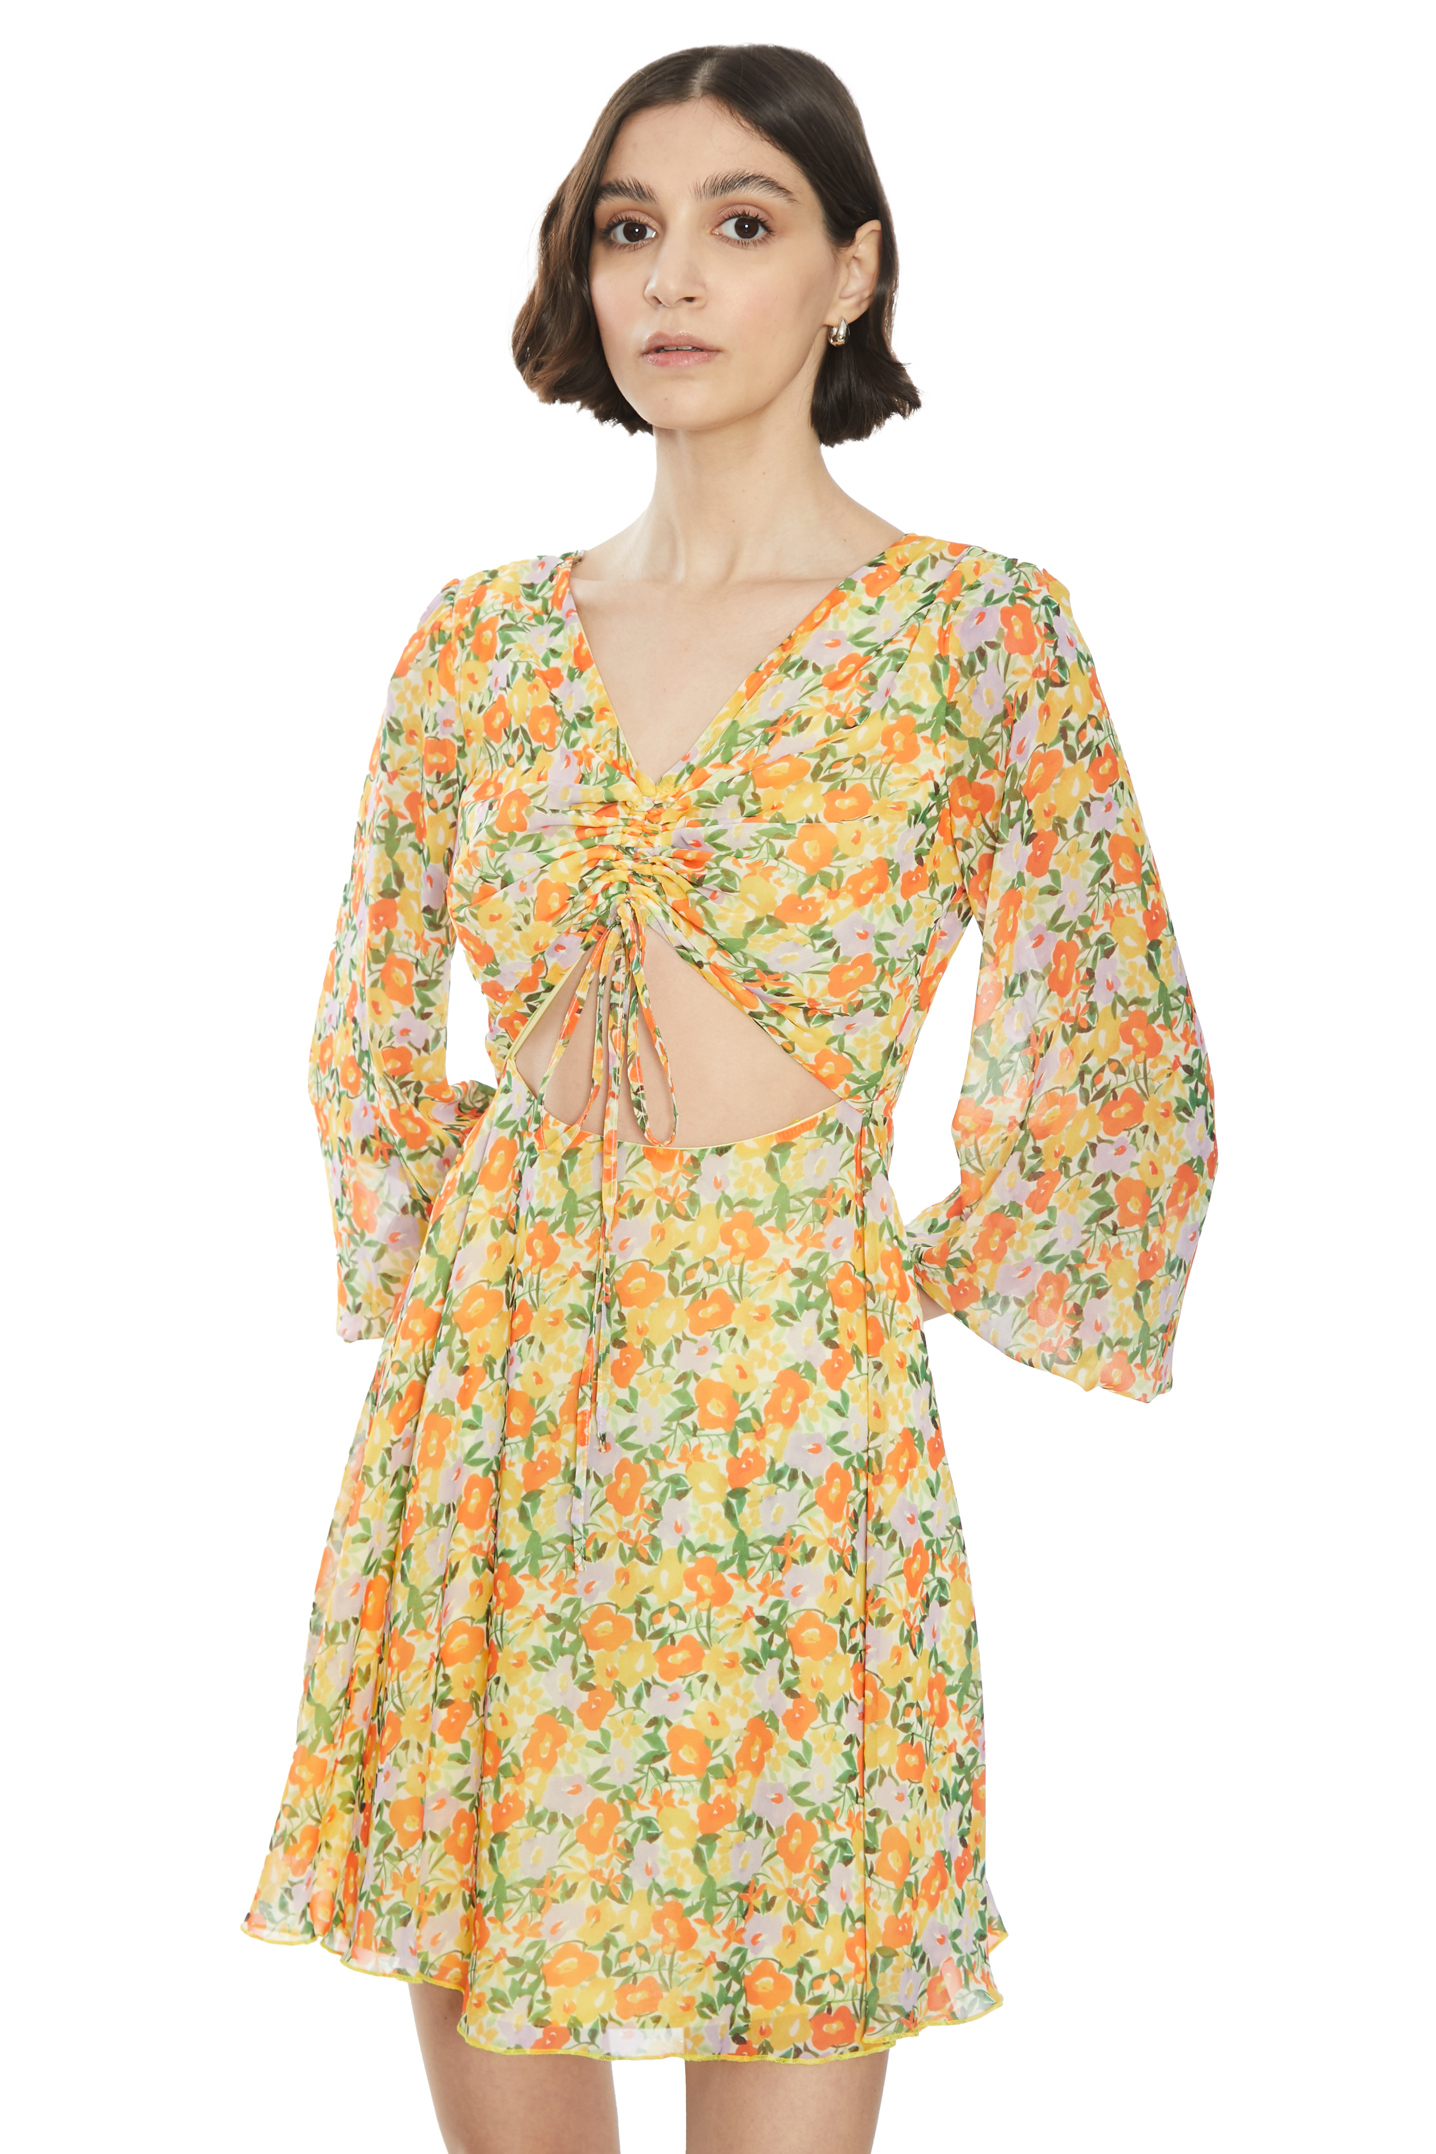 Printed chiffon sleeveless mini dress